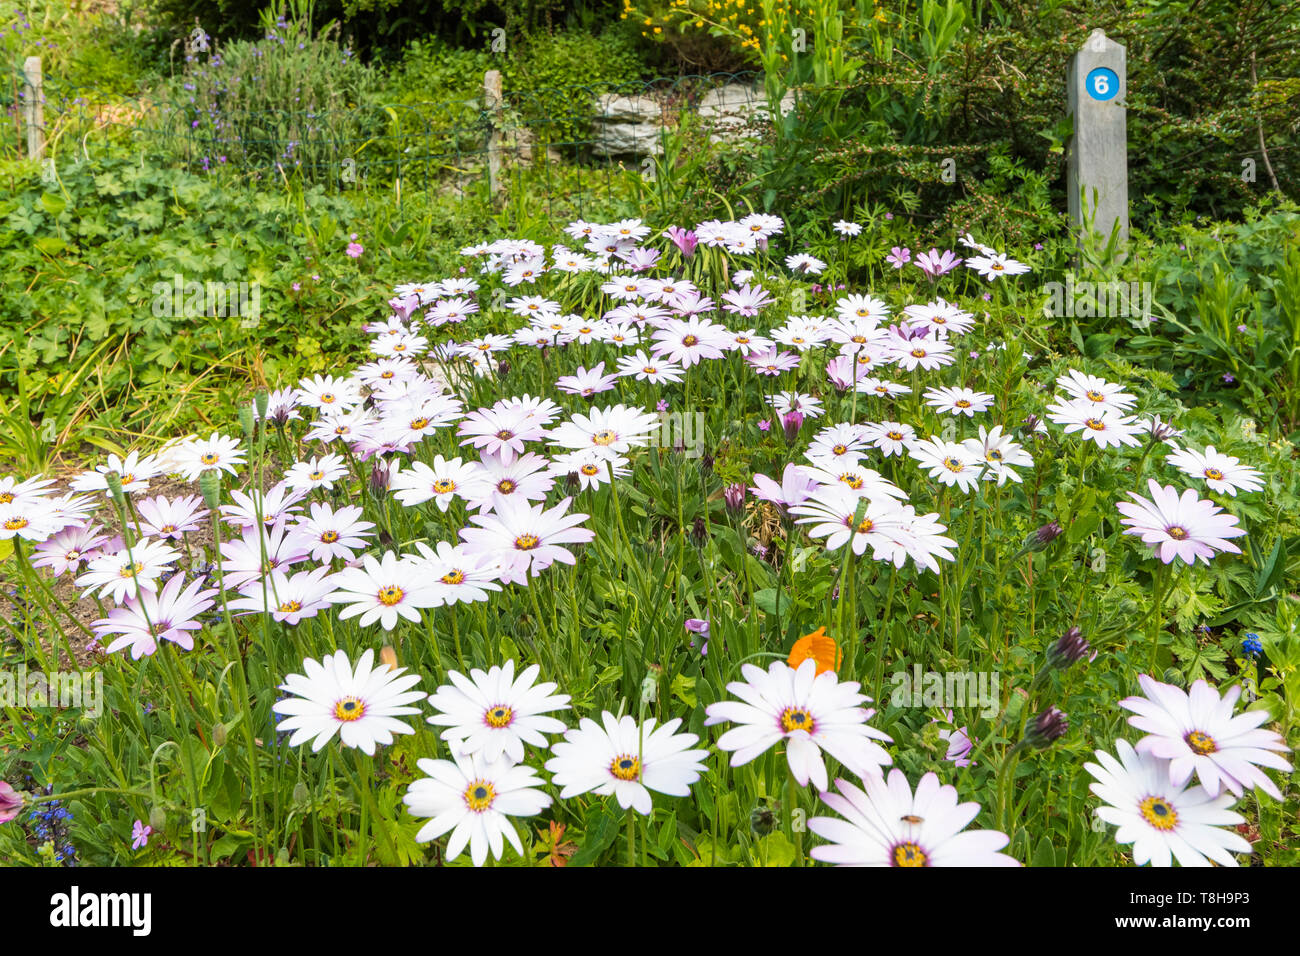 White African Daisies (Osteospermum) au printemps (mai) à Highdown Gardens de Ferring (près de Worthing), West Sussex, Angleterre, Royaume-Uni. Banque D'Images